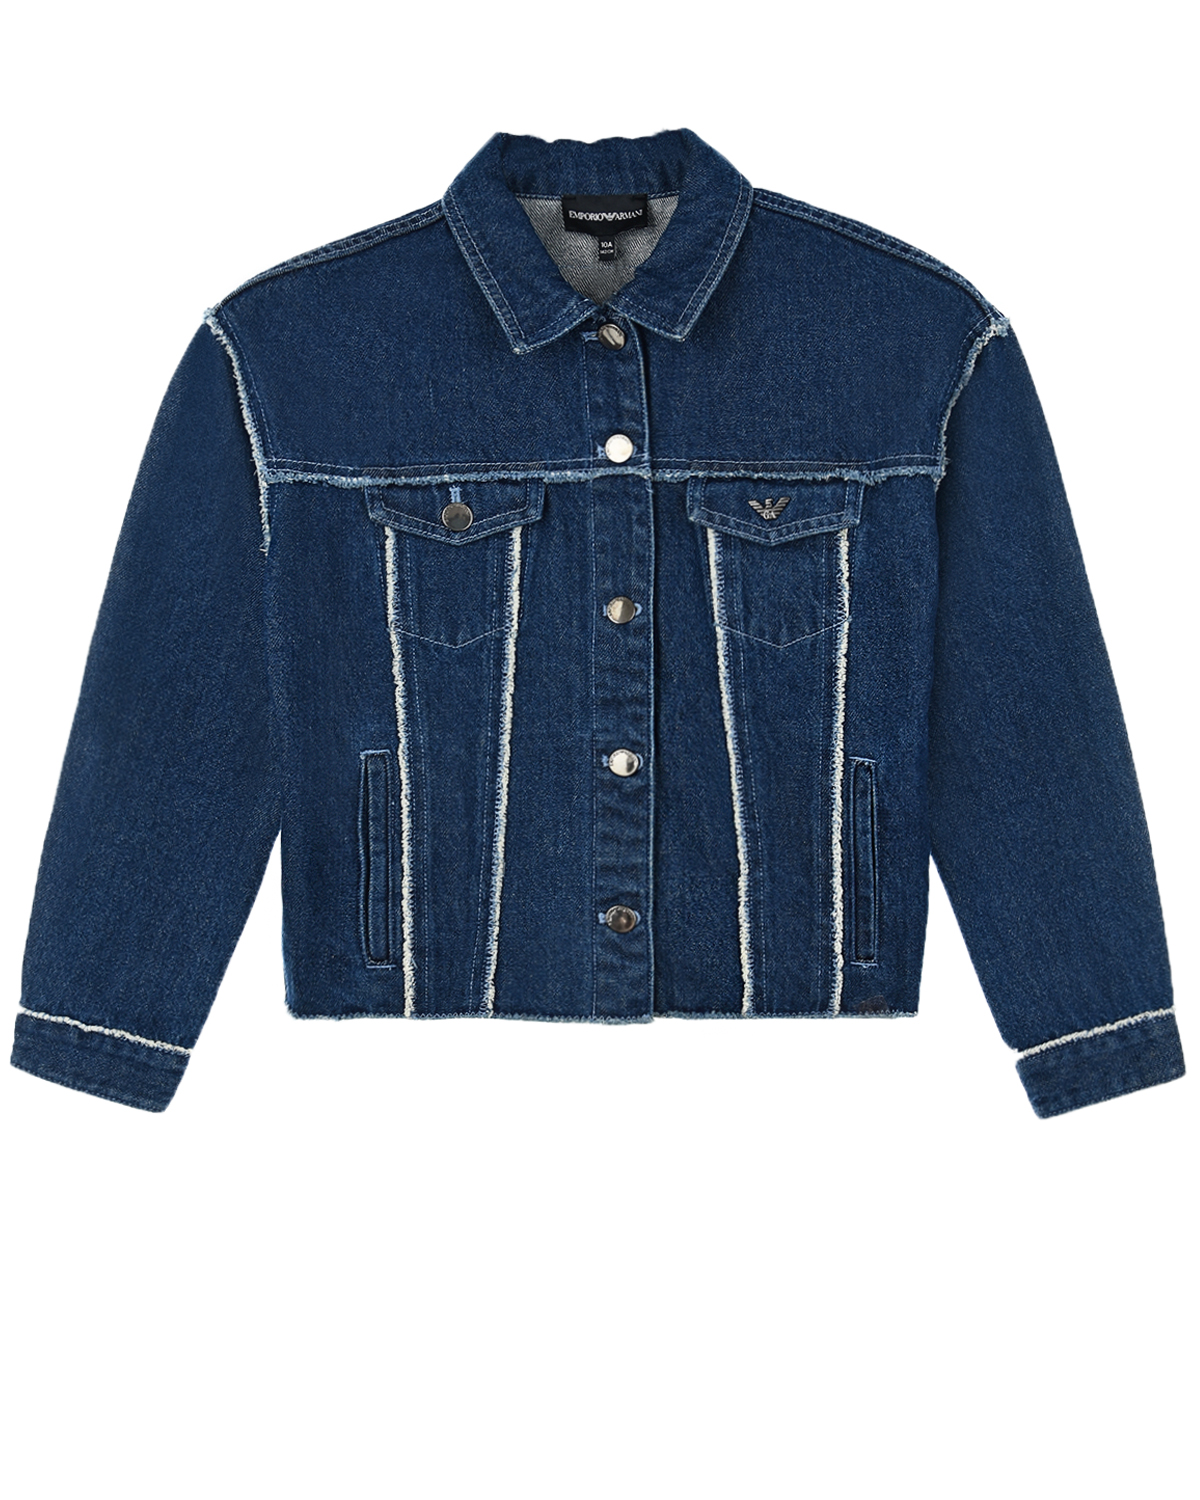 Синяя джинсовая куртка с аппликациями Emporio Armani детская